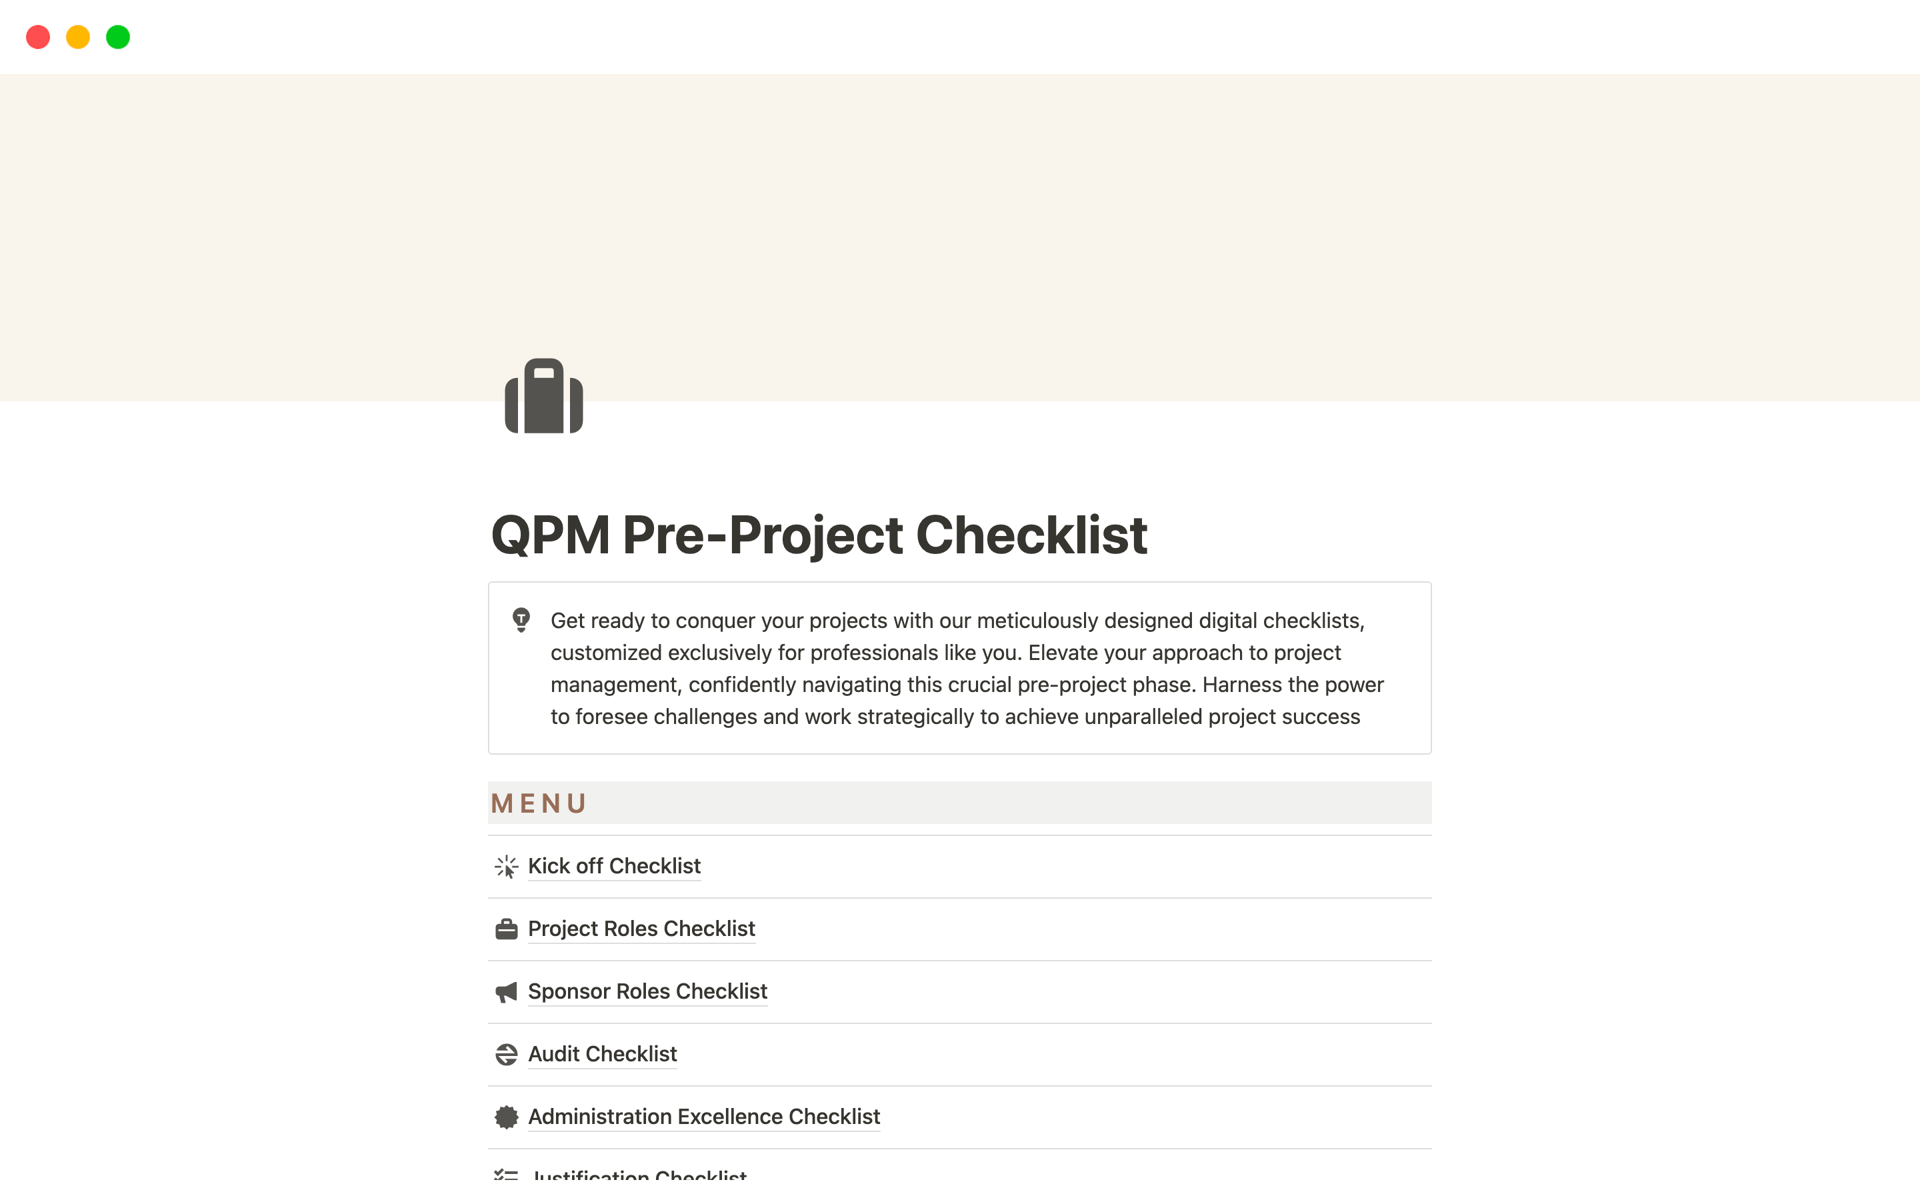 Uma prévia do modelo para QPM Pre-Project Checklist